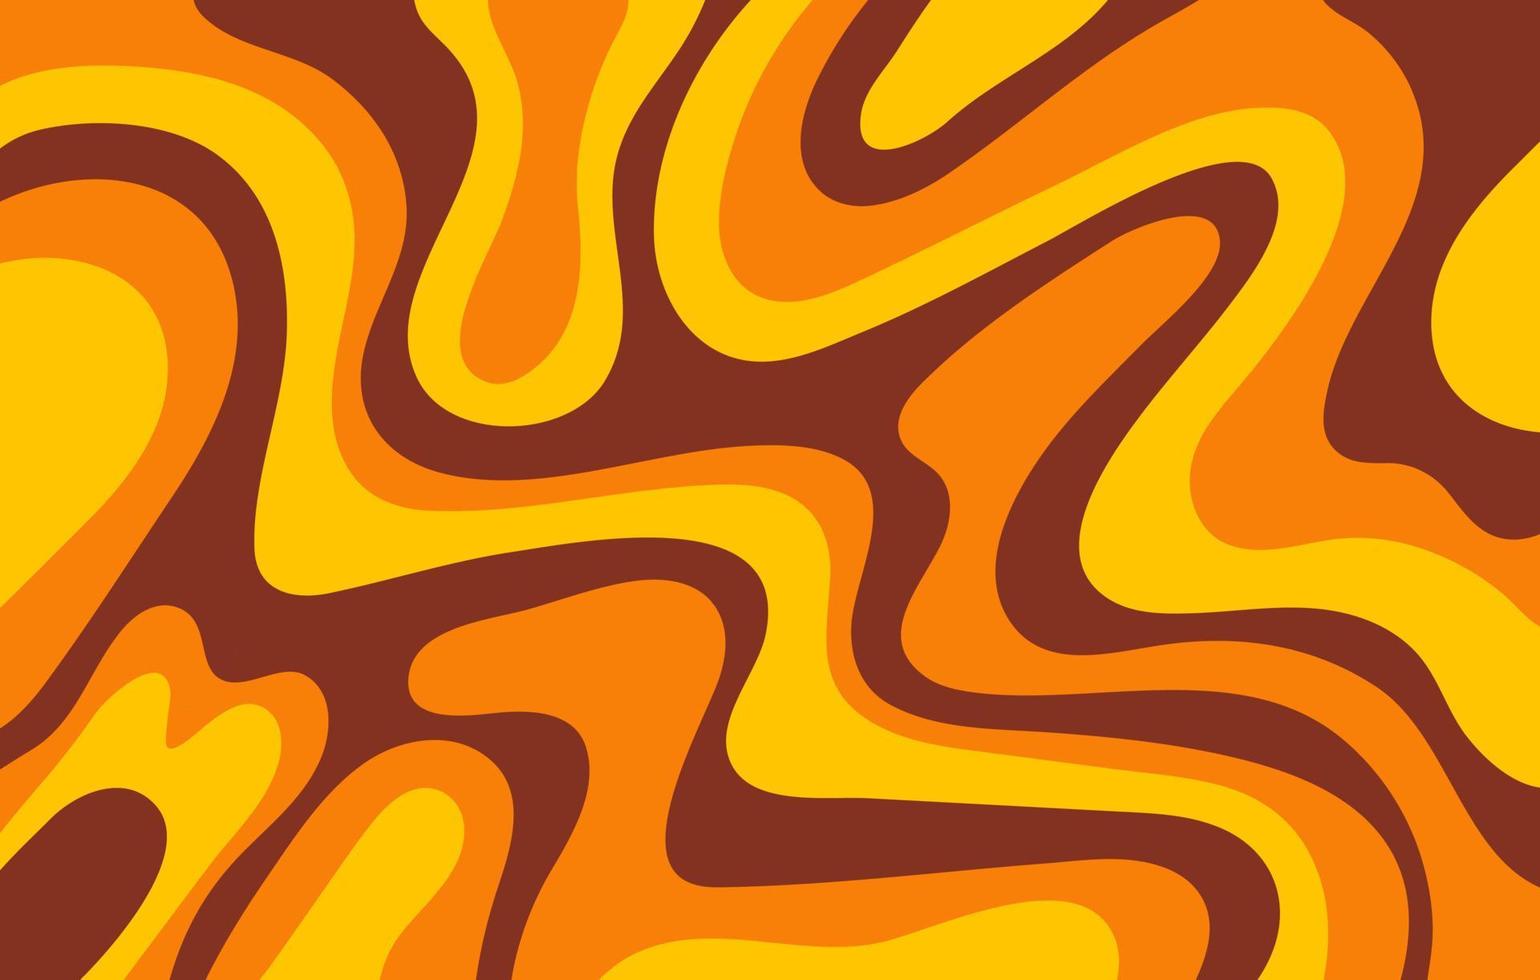 sfondo orizzontale astratto con onde colorate nei colori gialli, arancioni e marroni. illustrazione vettoriale alla moda in stile retrò anni '60, '70.